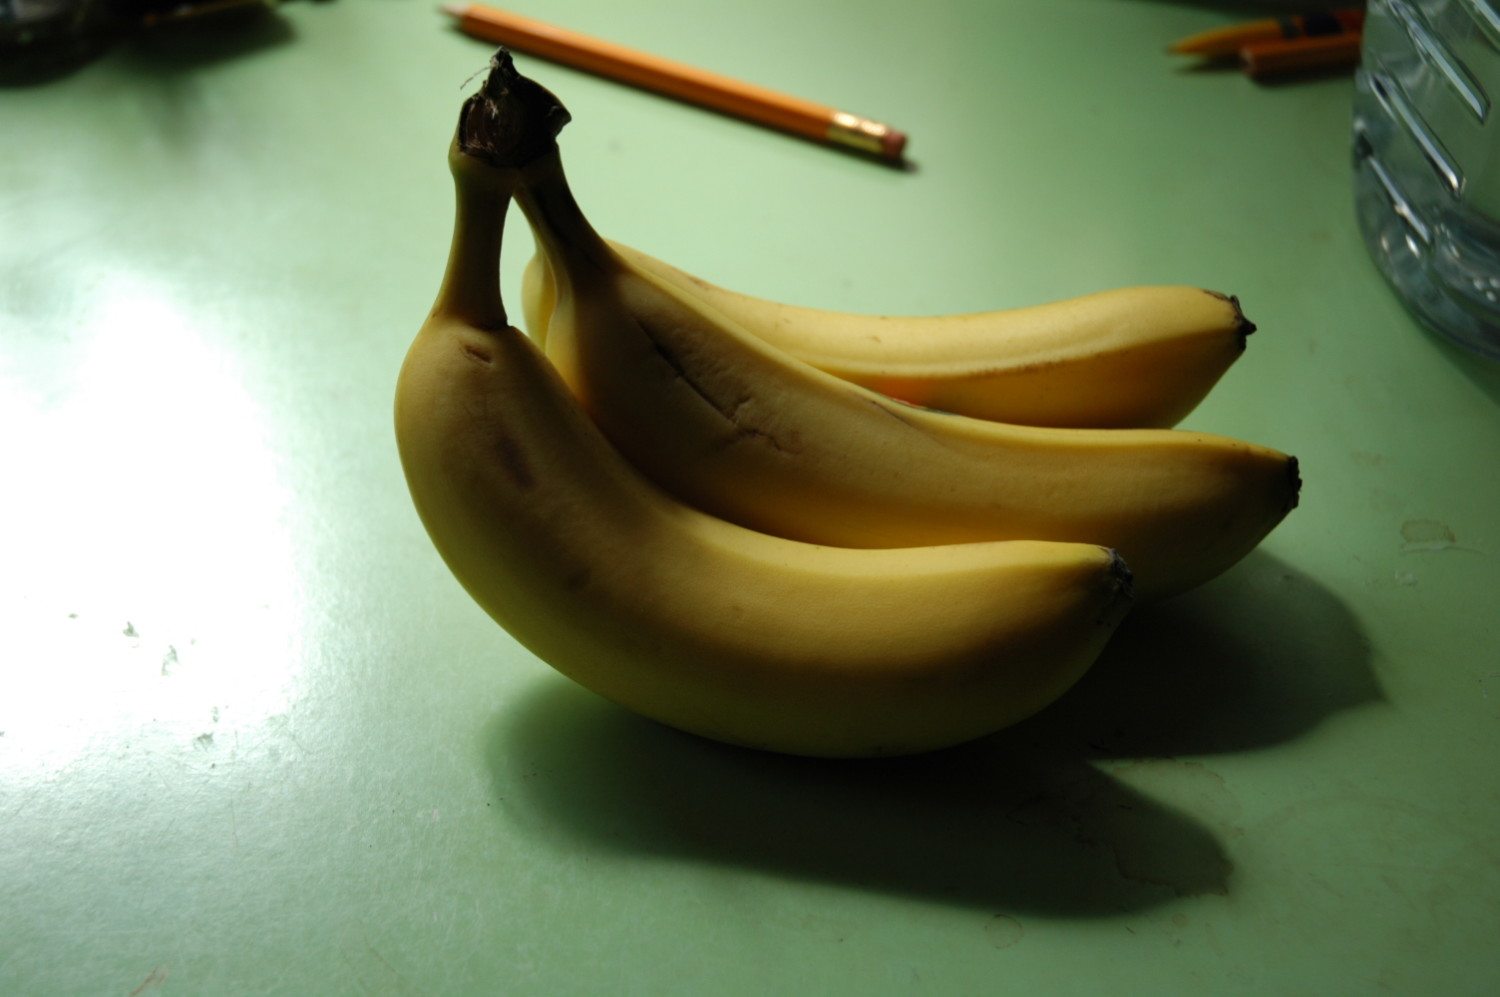 banana photo